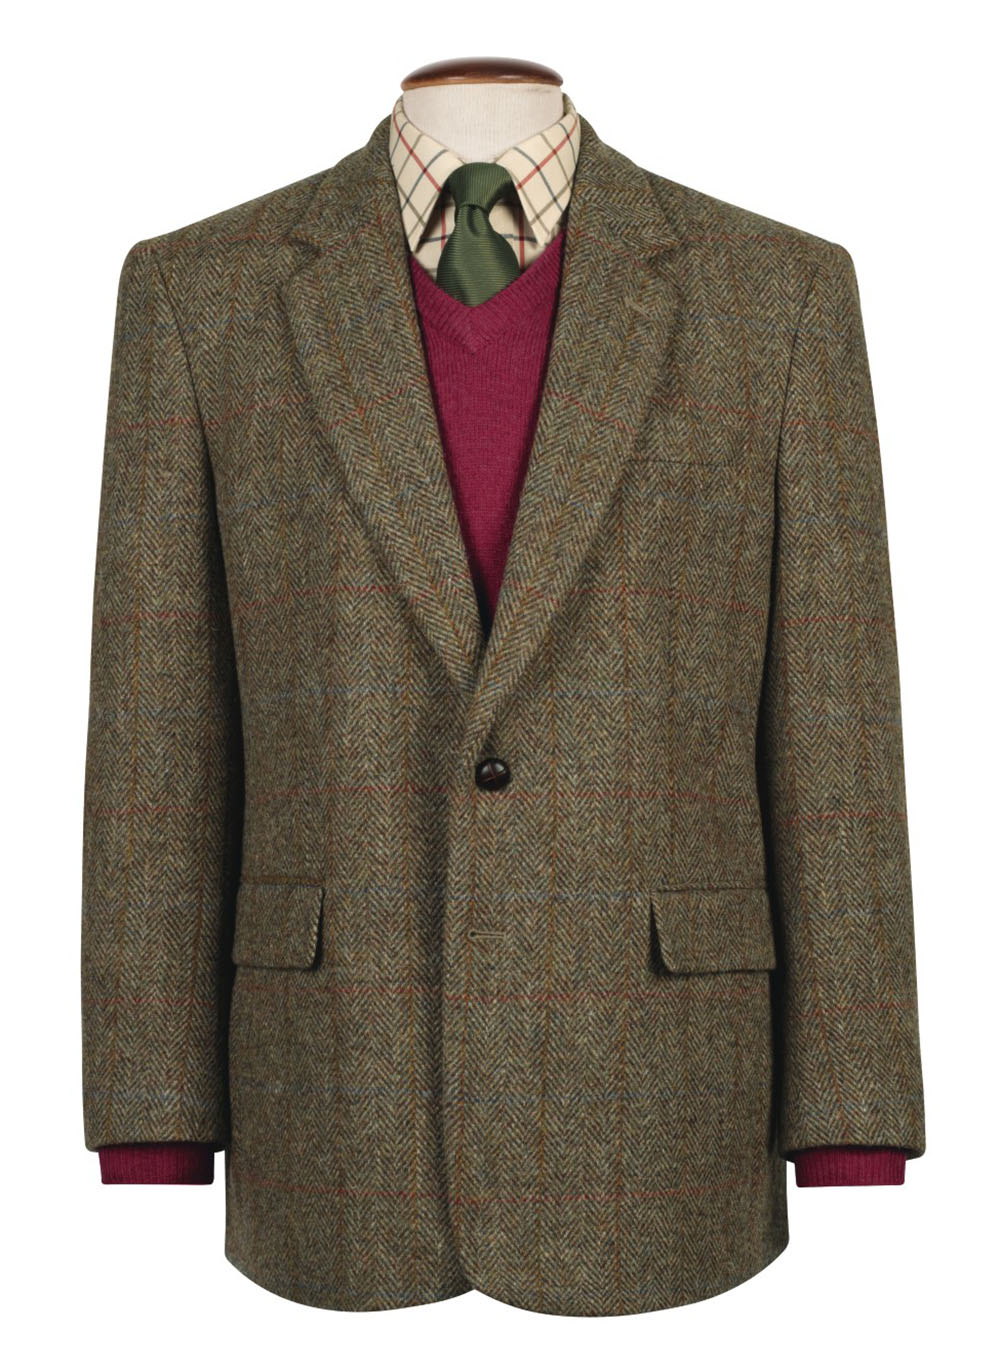 barbour harris tweed jacket